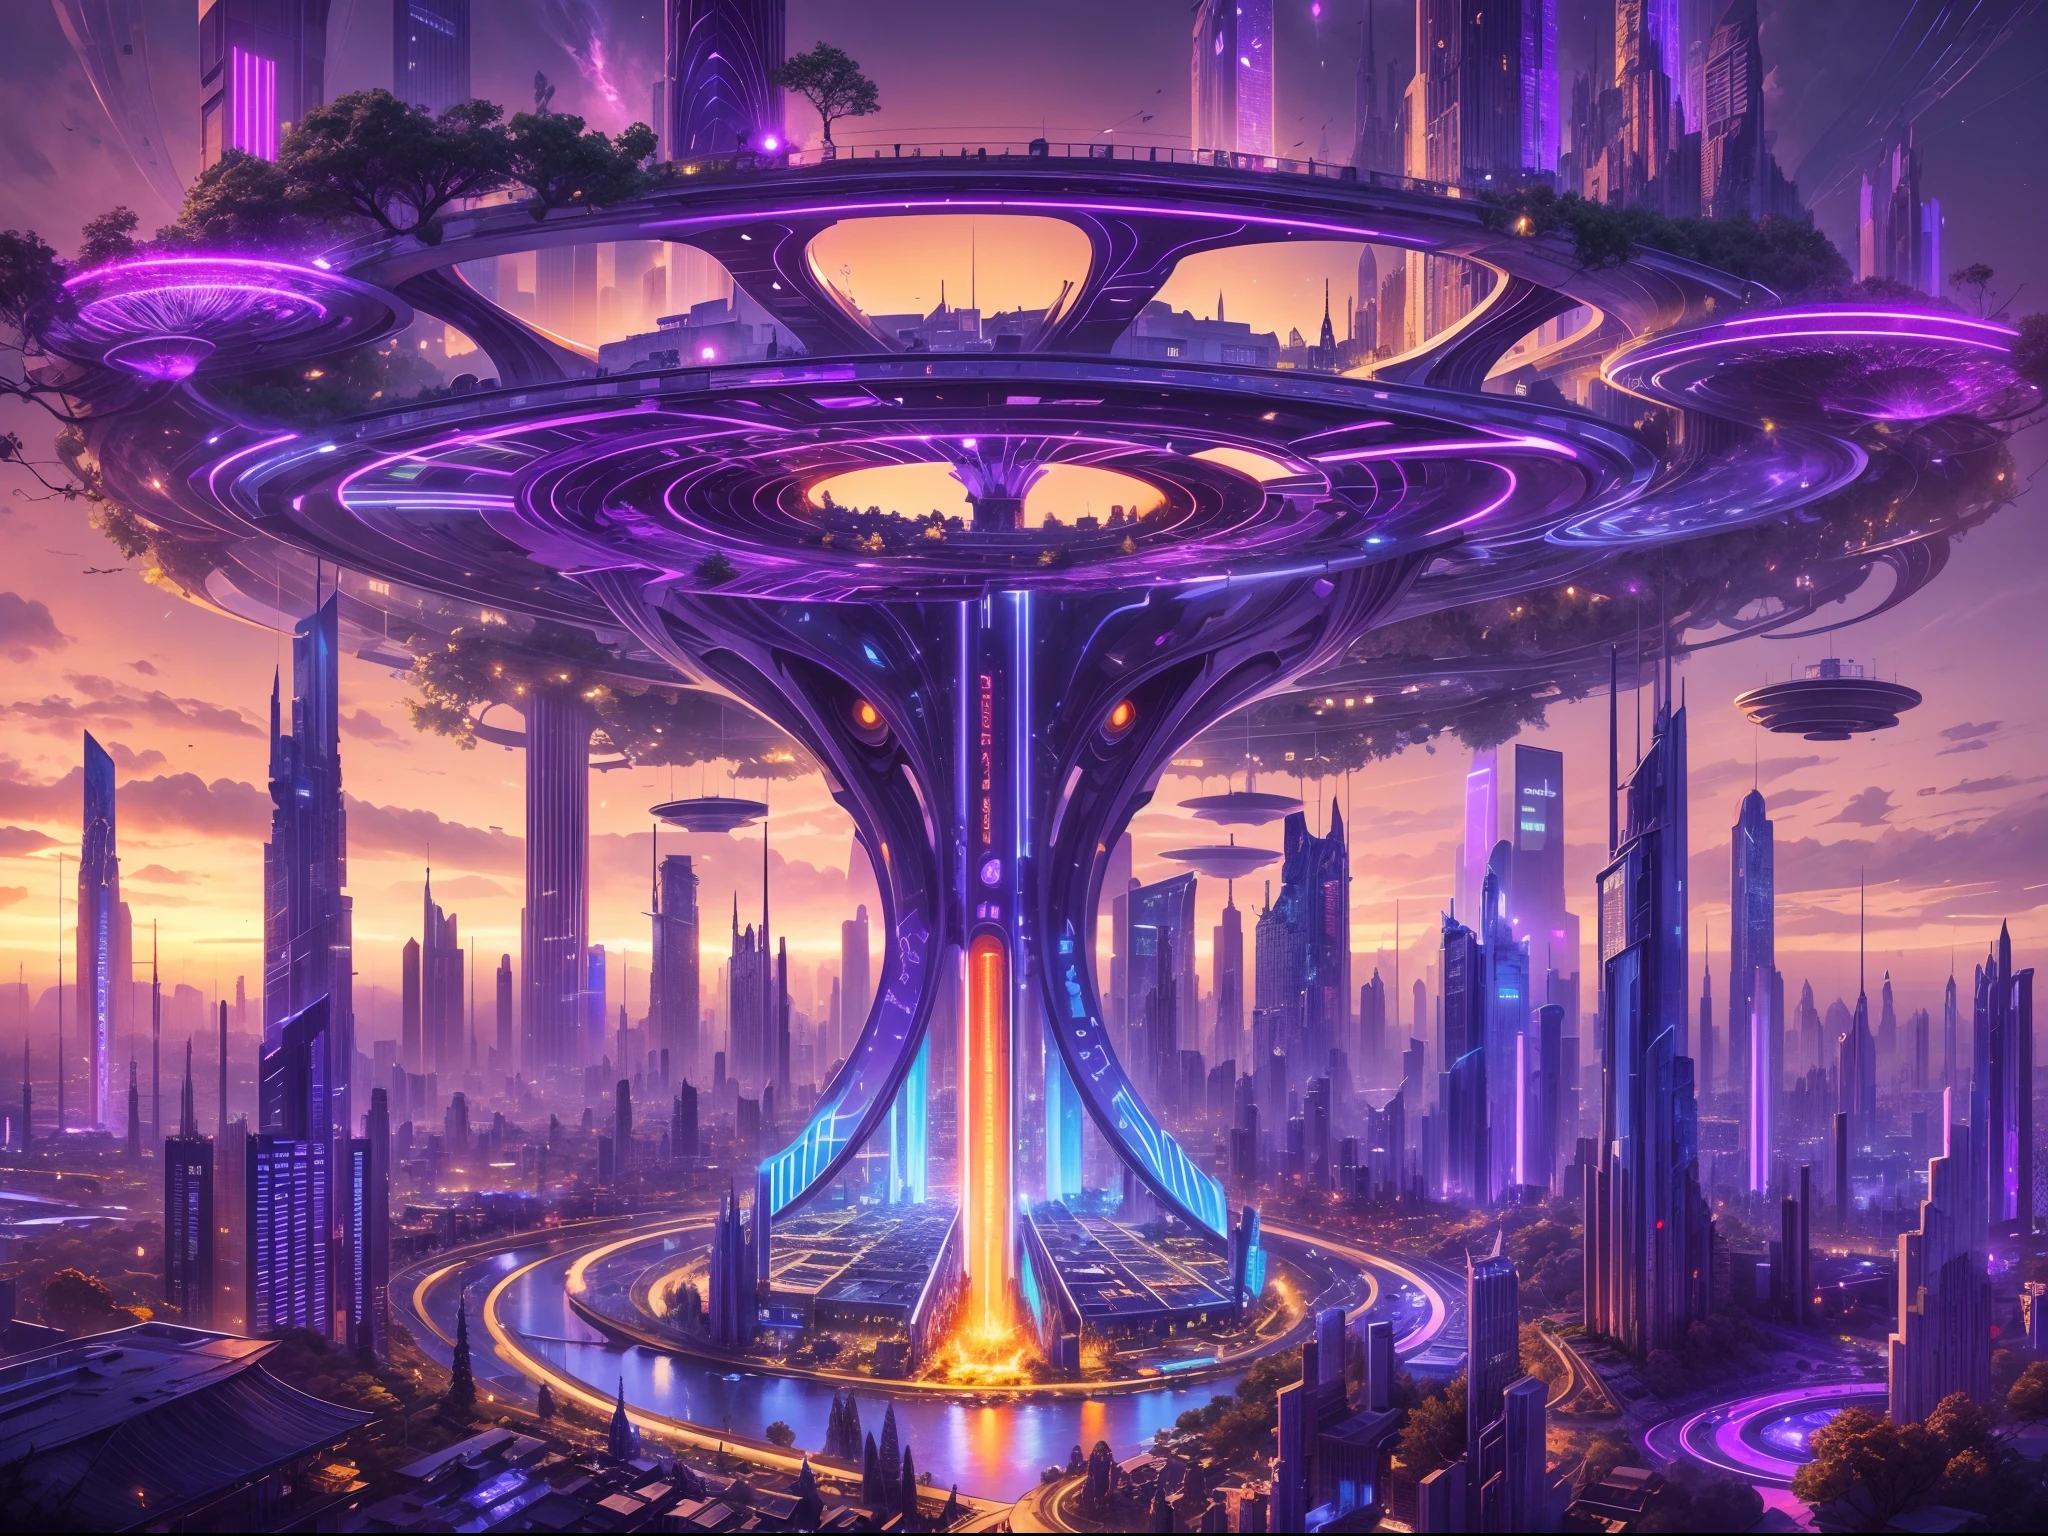 別世界の都市のイメージ, a 未来的な city, 巨大なハイテク柱が空を突き刺す, 柱の本体には無数のメカニックシックと長い枝, detailed 未来的な houses on each branch, 広角の, ultra 広角の, すべてのユニークな都市をキャプチャ, 柱と枝に輝く紫と青の光線, 各支店はハイテクブリッジでつながっています, 未来的な, 夜間, 輝く夜, 枝のリンクが一緒になって、大きな柱を囲む円形の構造を作成します,